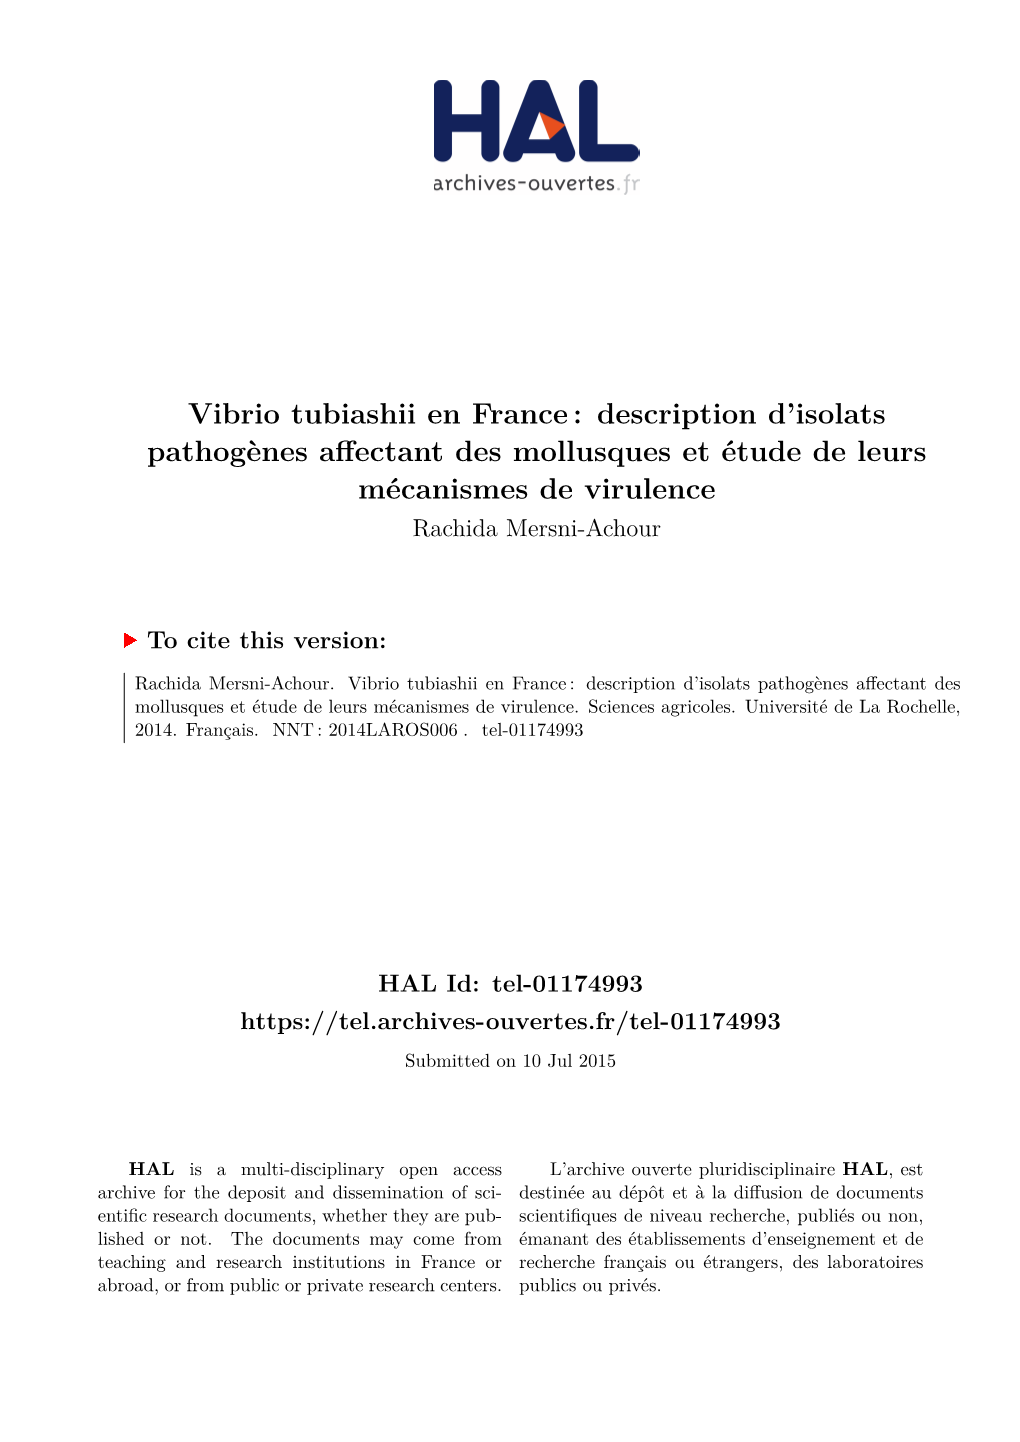 Vibrio Tubiashii En France : Description D’Isolats Pathogènes Affectant Des Mollusques Et Étude De Leurs Mécanismes De Virulence Rachida Mersni-Achour